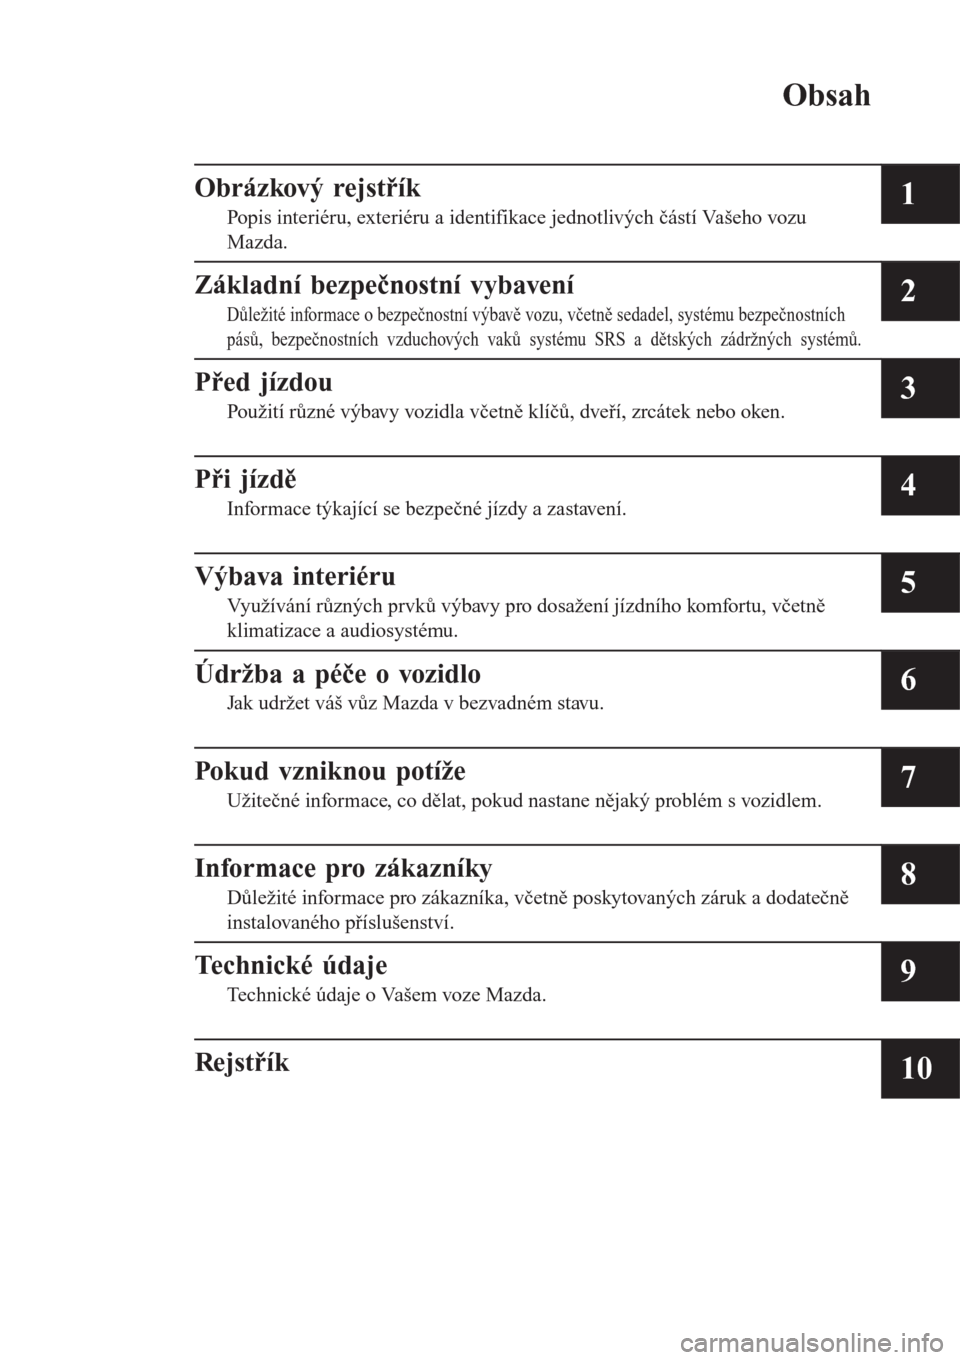 MAZDA MODEL CX-3 2016  Návod k obsluze (in Czech) Obsah
Obrázkový rejstřík
Popis interiéru, exteriéru a identifikace jednotlivých částí Vašeho vozu
Mazda.1
Základní bezpečnostní vybavení
Důležité informace o bezpečnostní výbavě